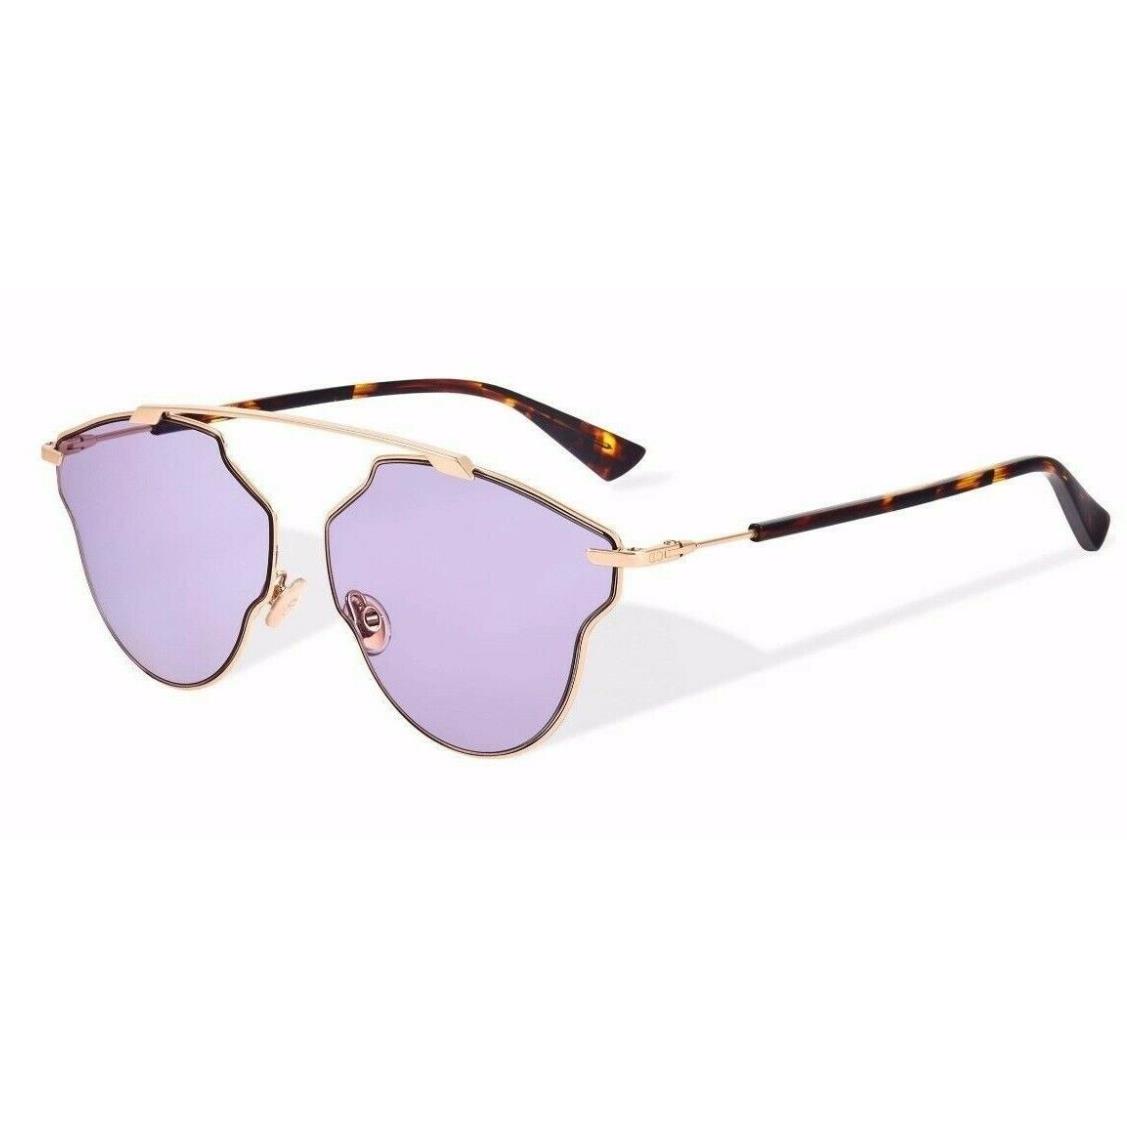 Dior SO Real Pop Sunglasses 06J-U1 59mm Gold-havana / Pink Lens - Pink, Frame: Gold, Lens: Pink